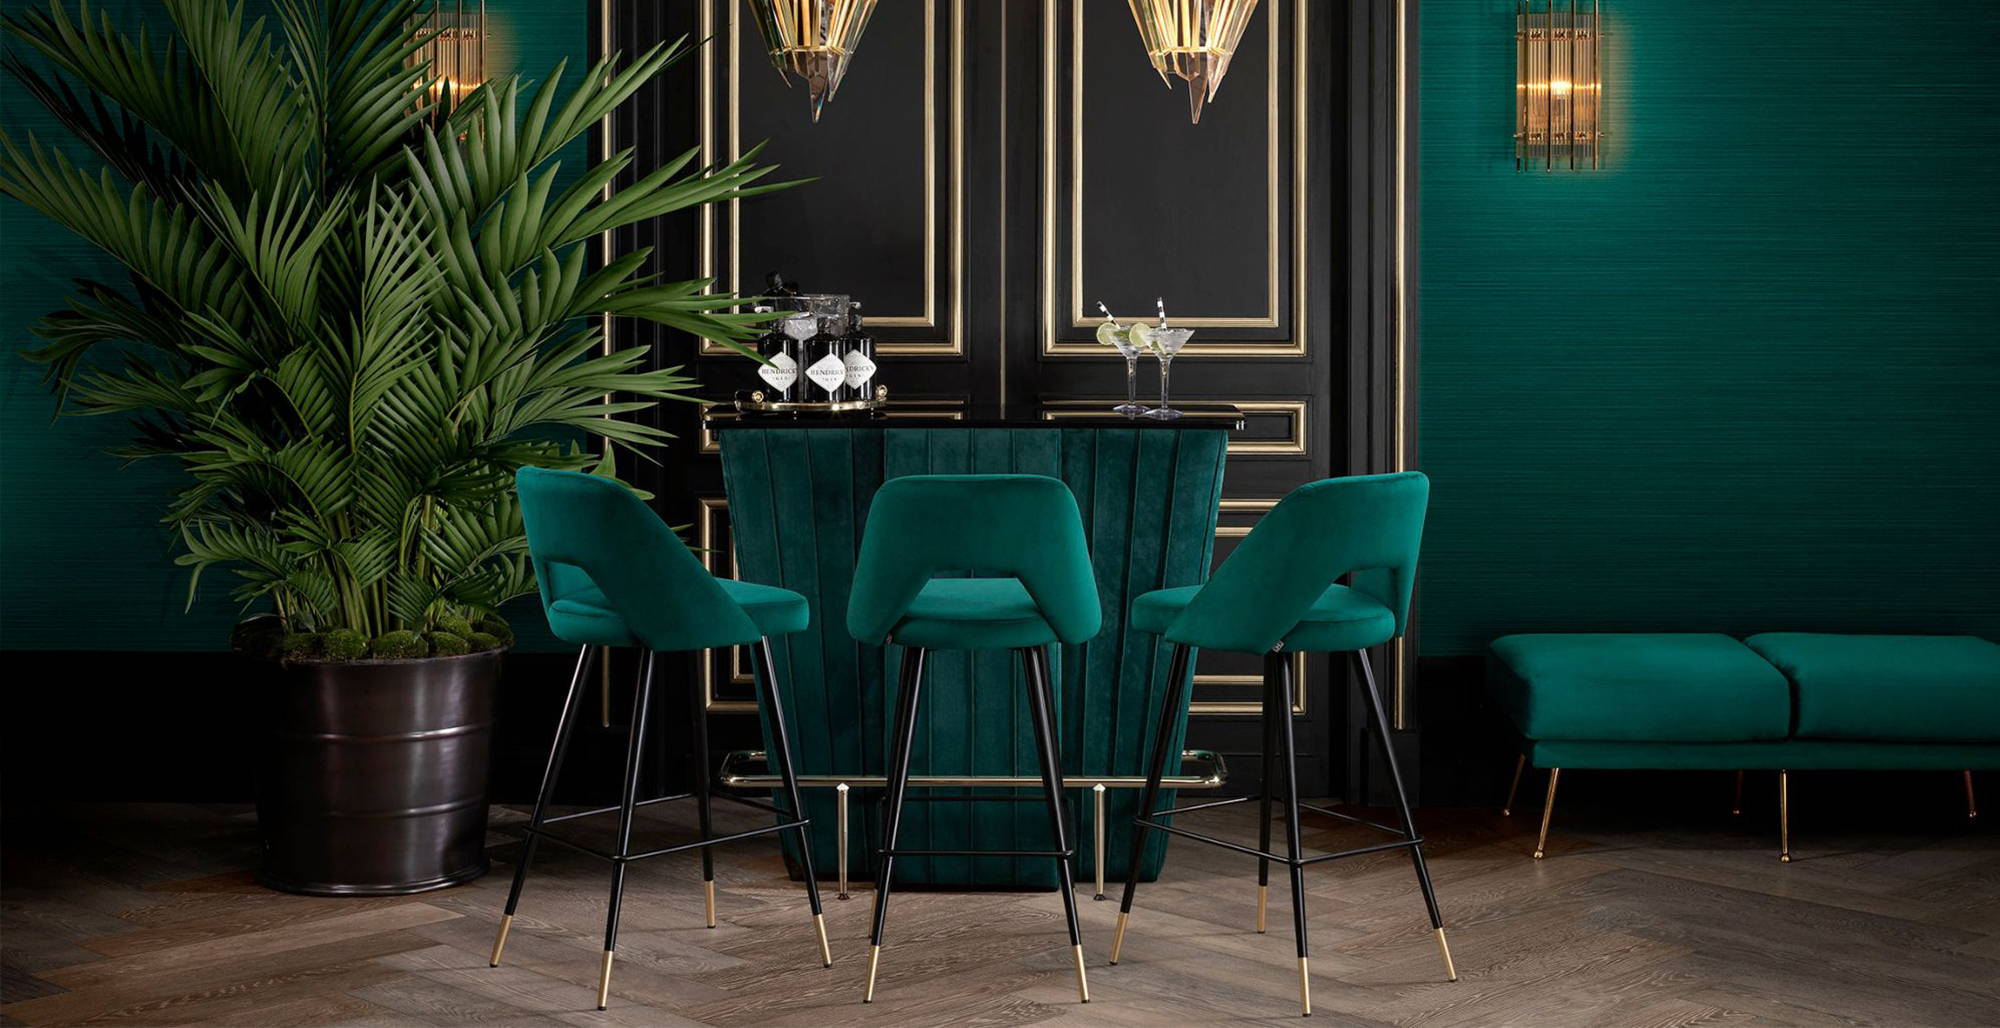 Eichholtz Furniture & Chairs - Luxury At Home Bar Design - LuxDeco.com